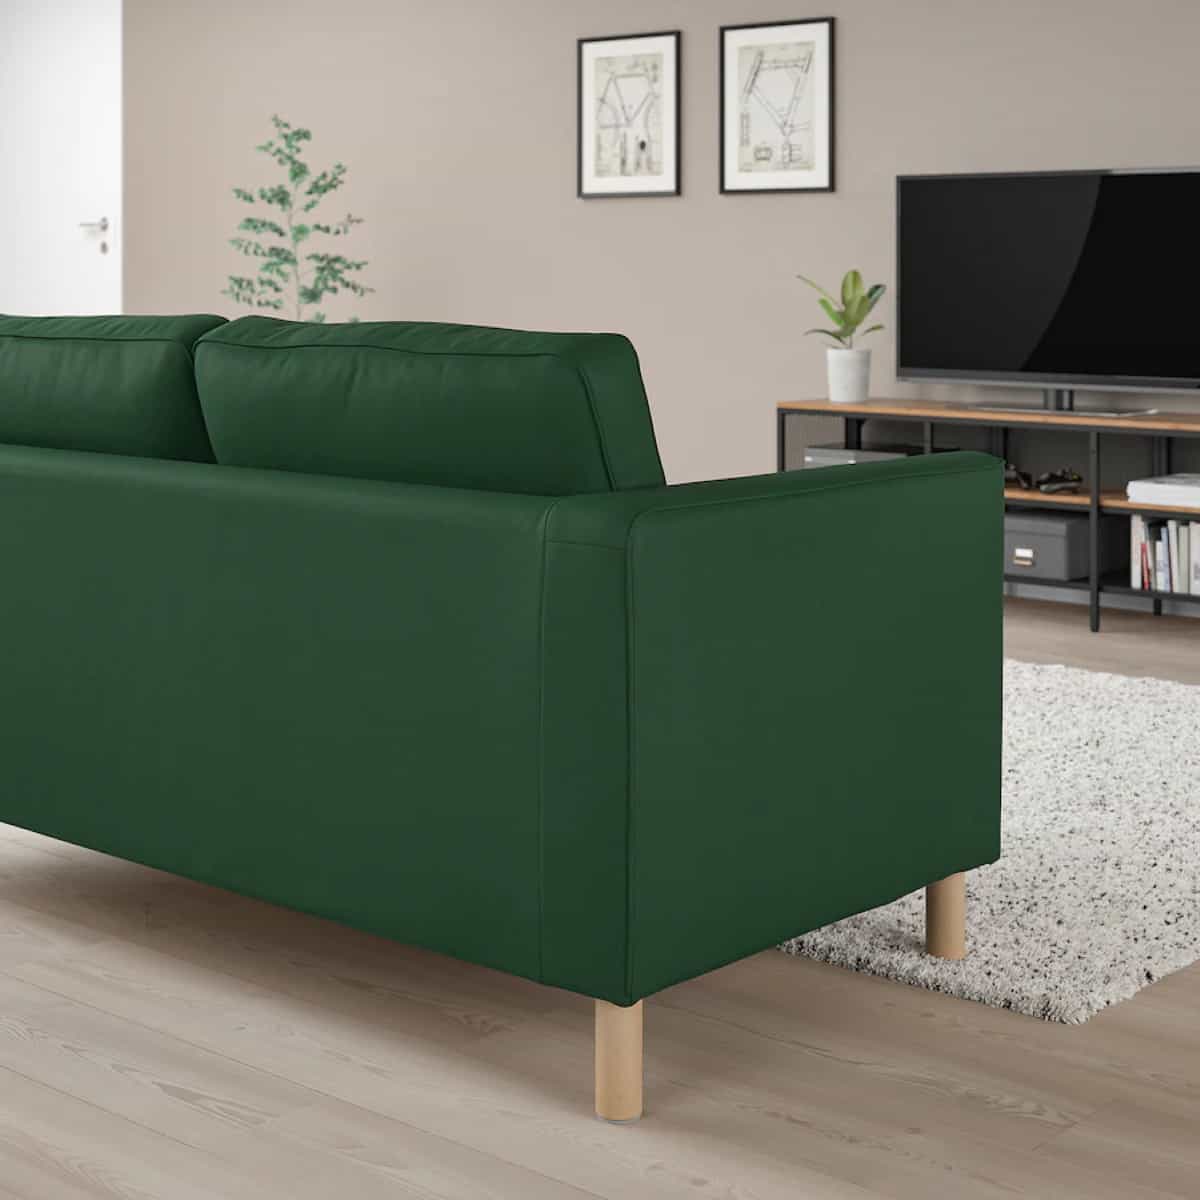 sofa verde parup de ikea tres plazas